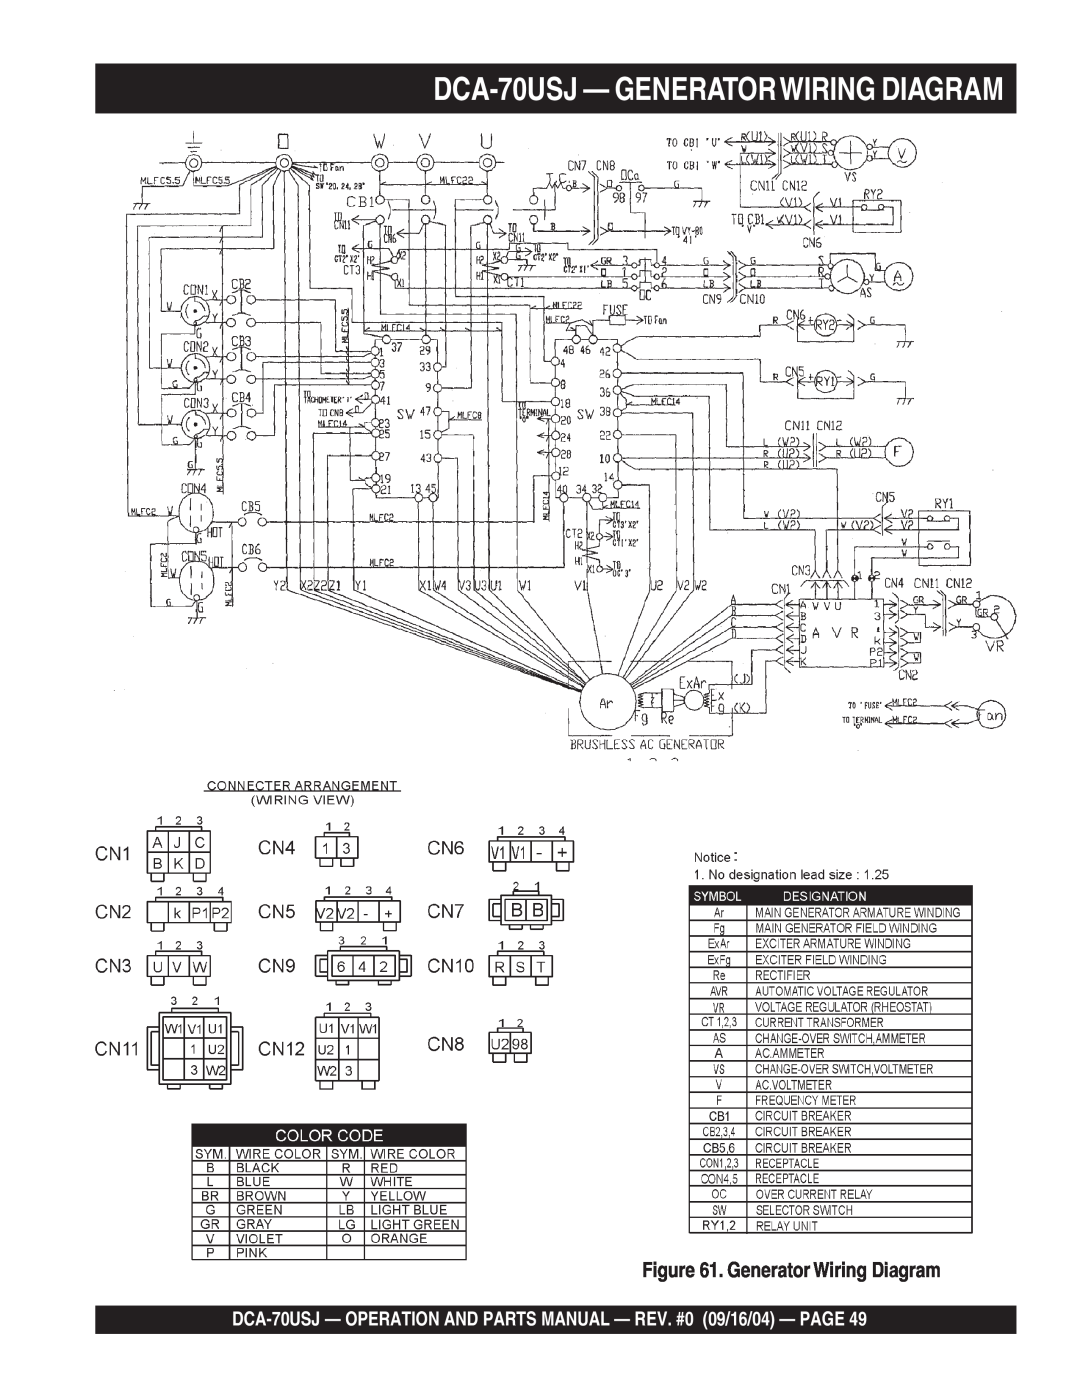 Multiquip dca-70usj operation manual DCA-70USJ- GENERATORWIRING DIAGRAM, Generator Wiring Diagram 